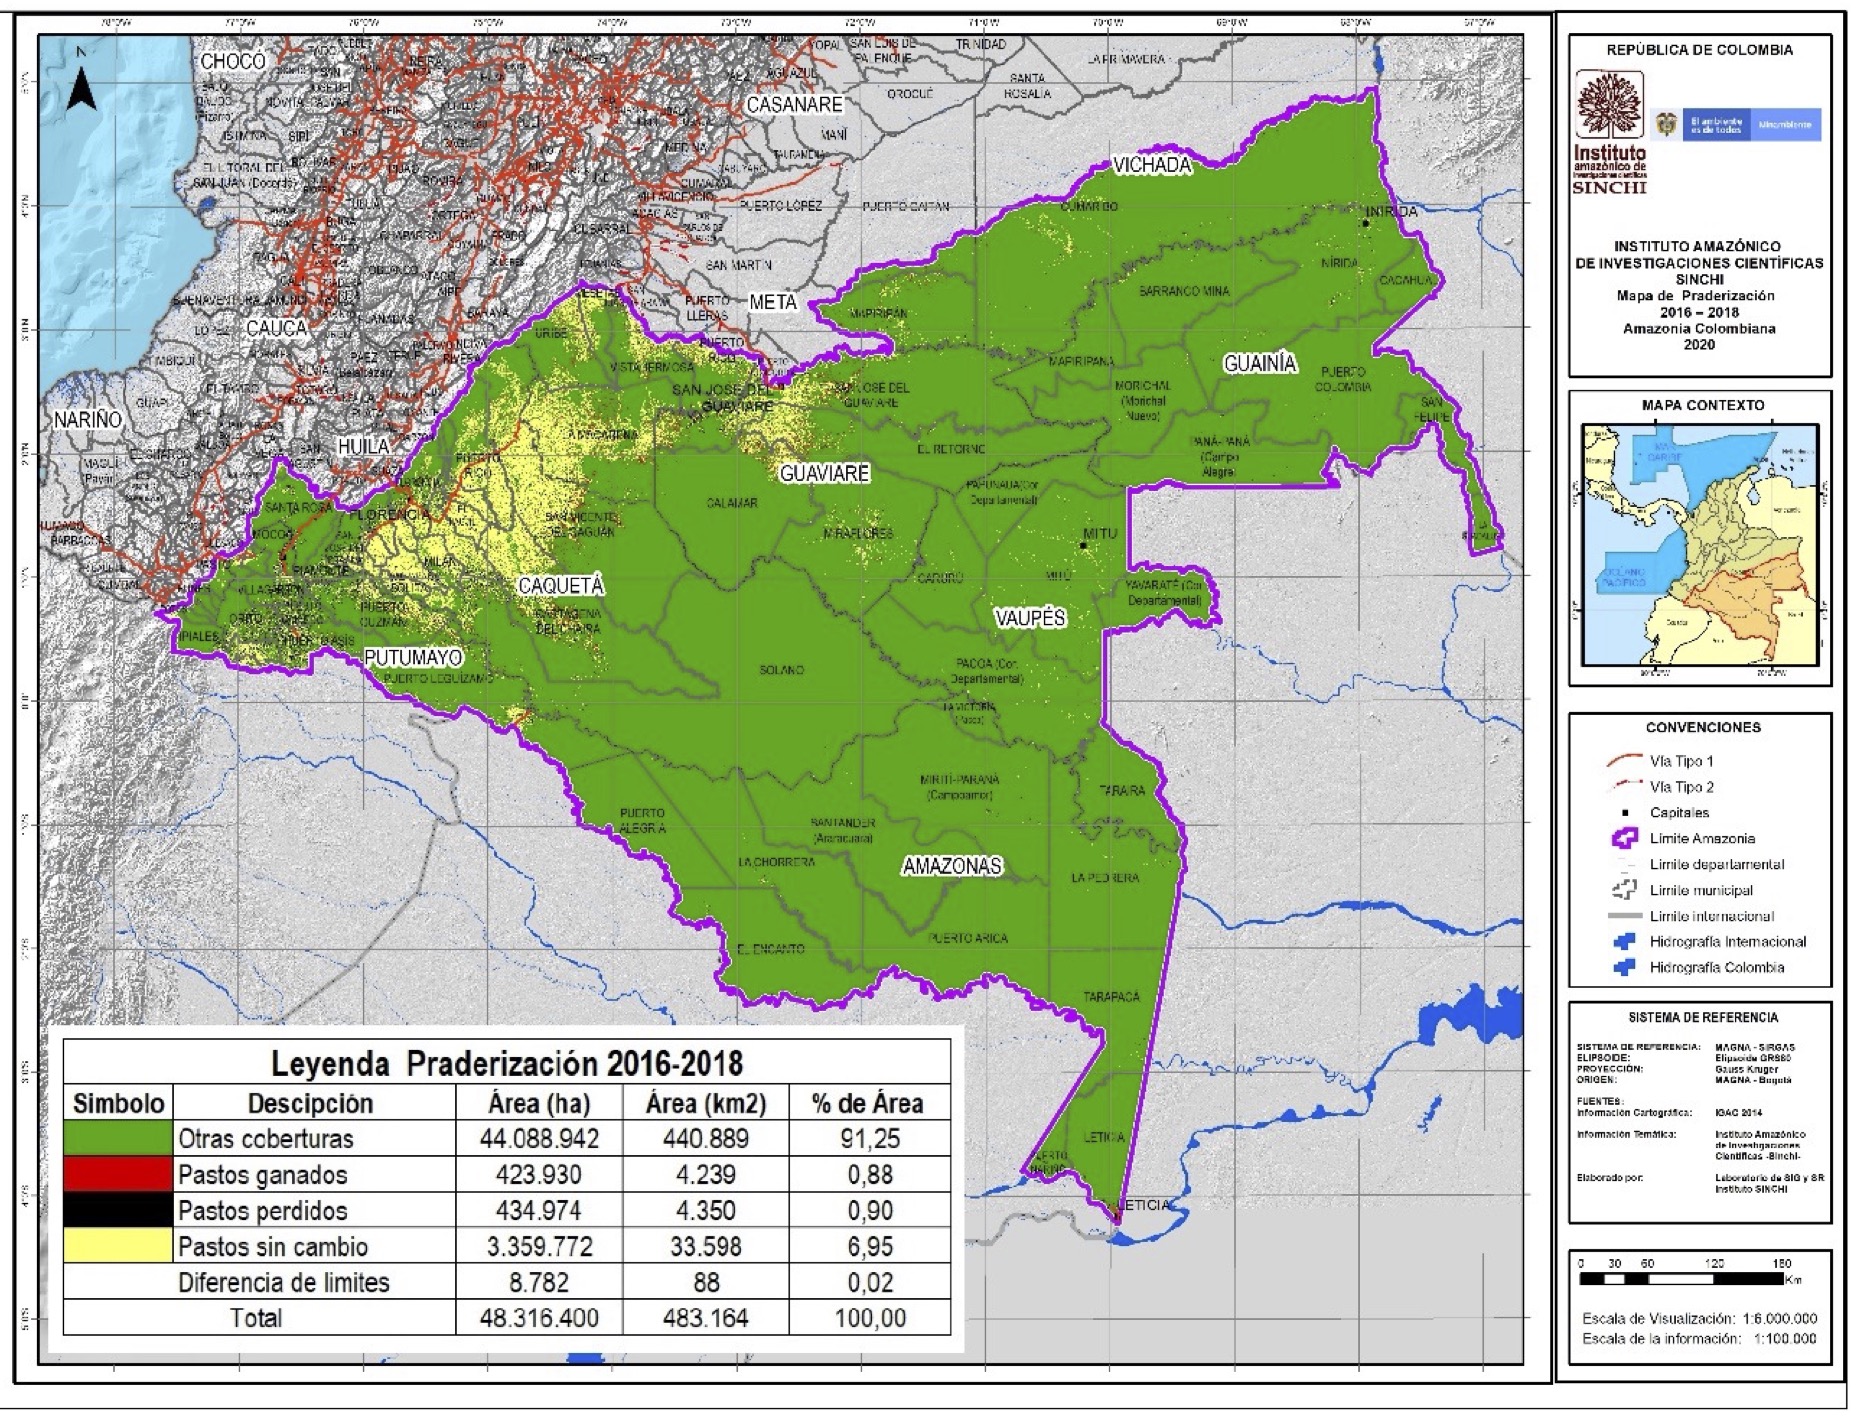 Figura 32a. Localización de las áreas praderizadas en el periodo 2016-2018